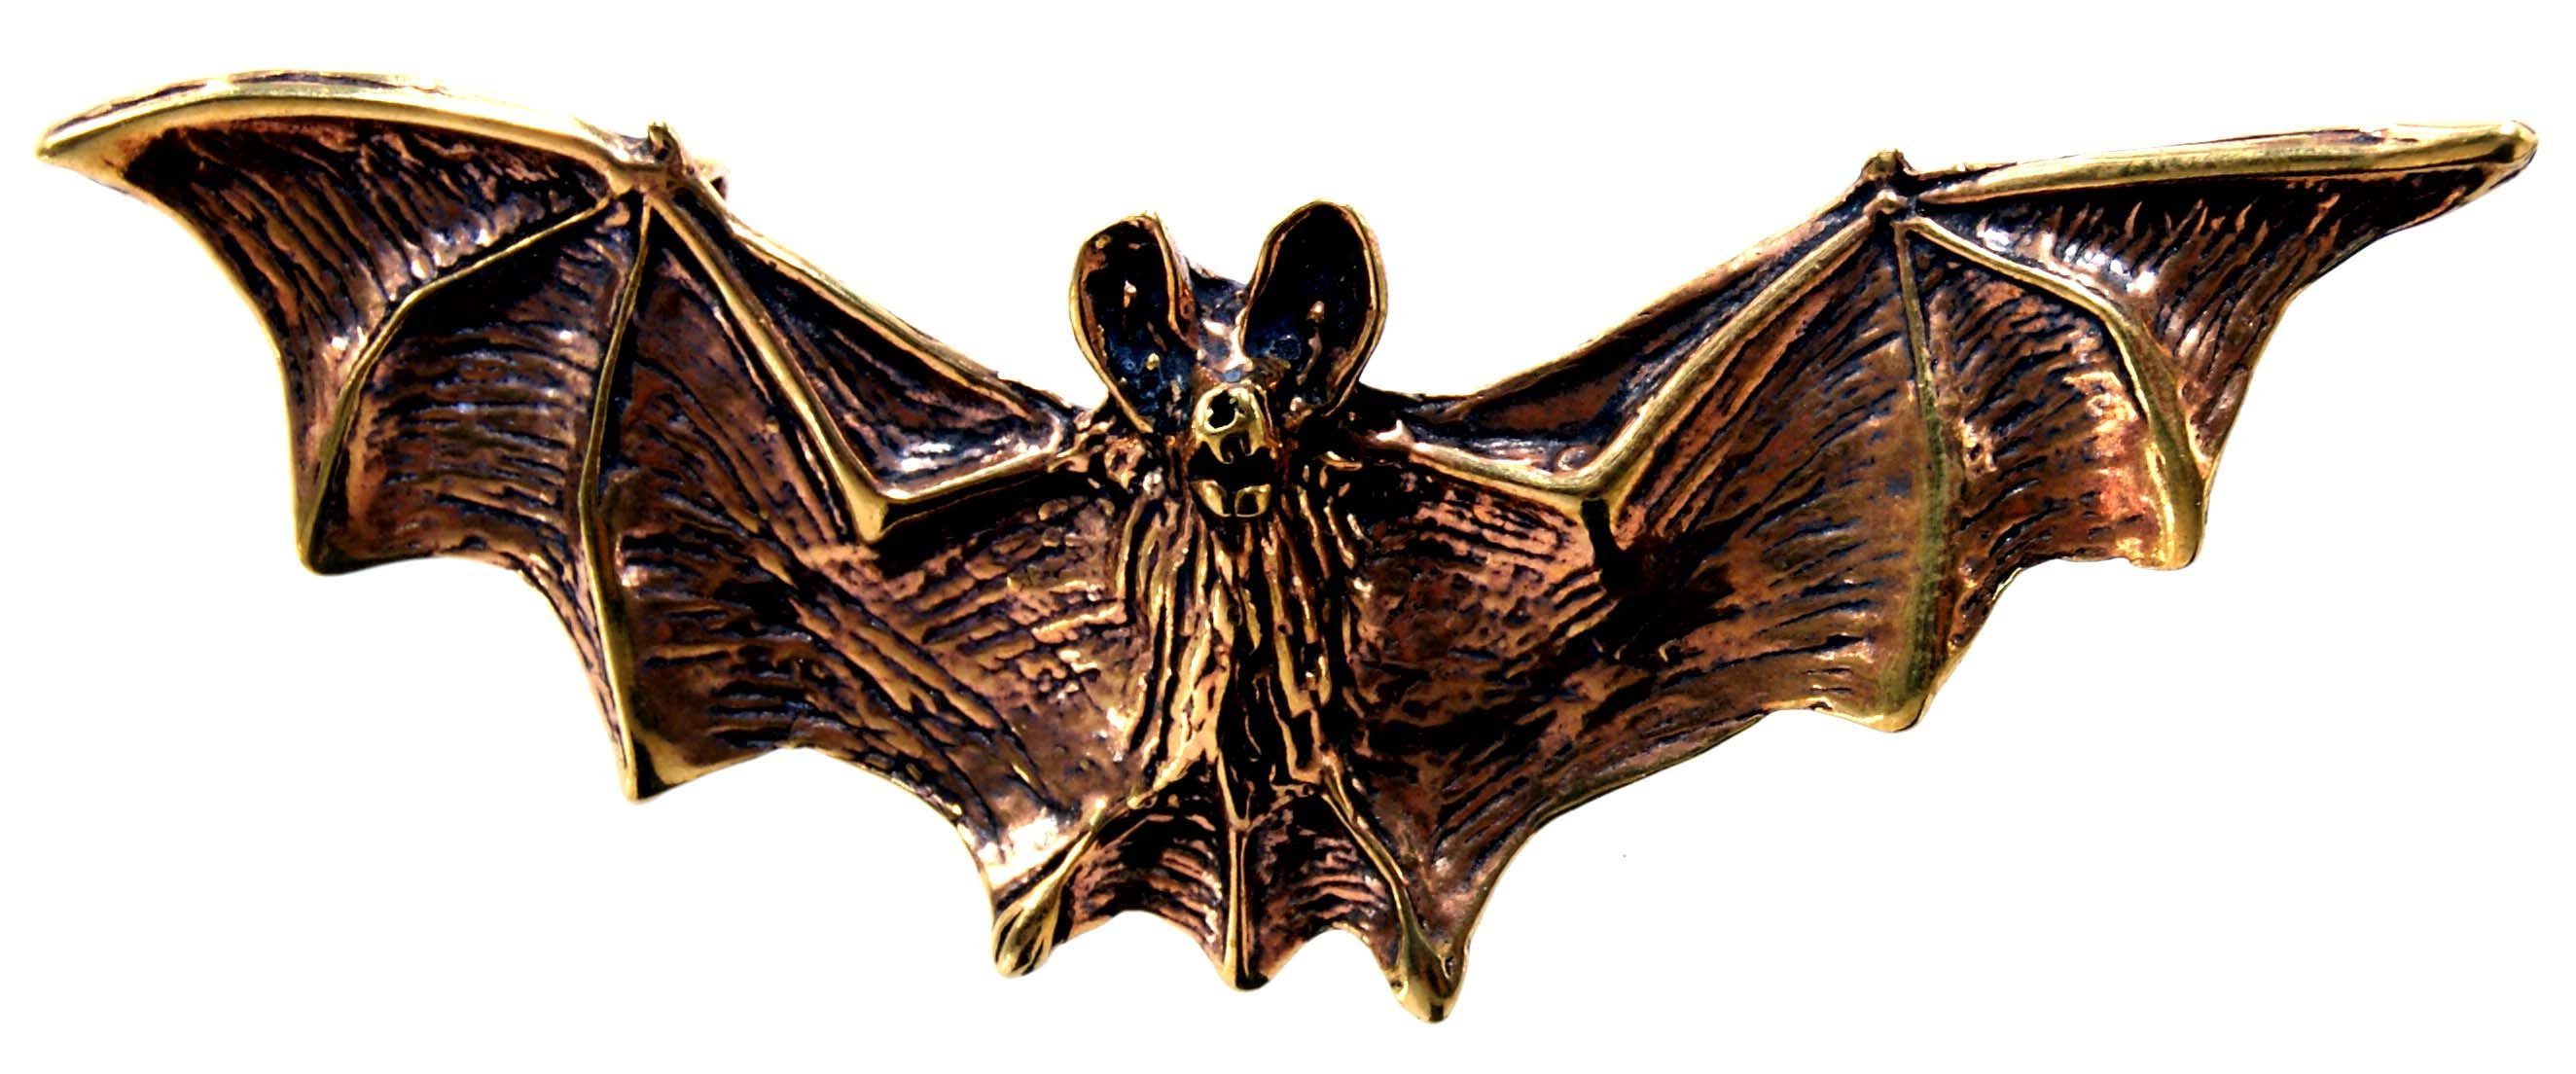 Kiss of Leather Kettenanhänger großer Gothic Anhänger Bronze LARP Fledermaus Vampir Bat plastischer